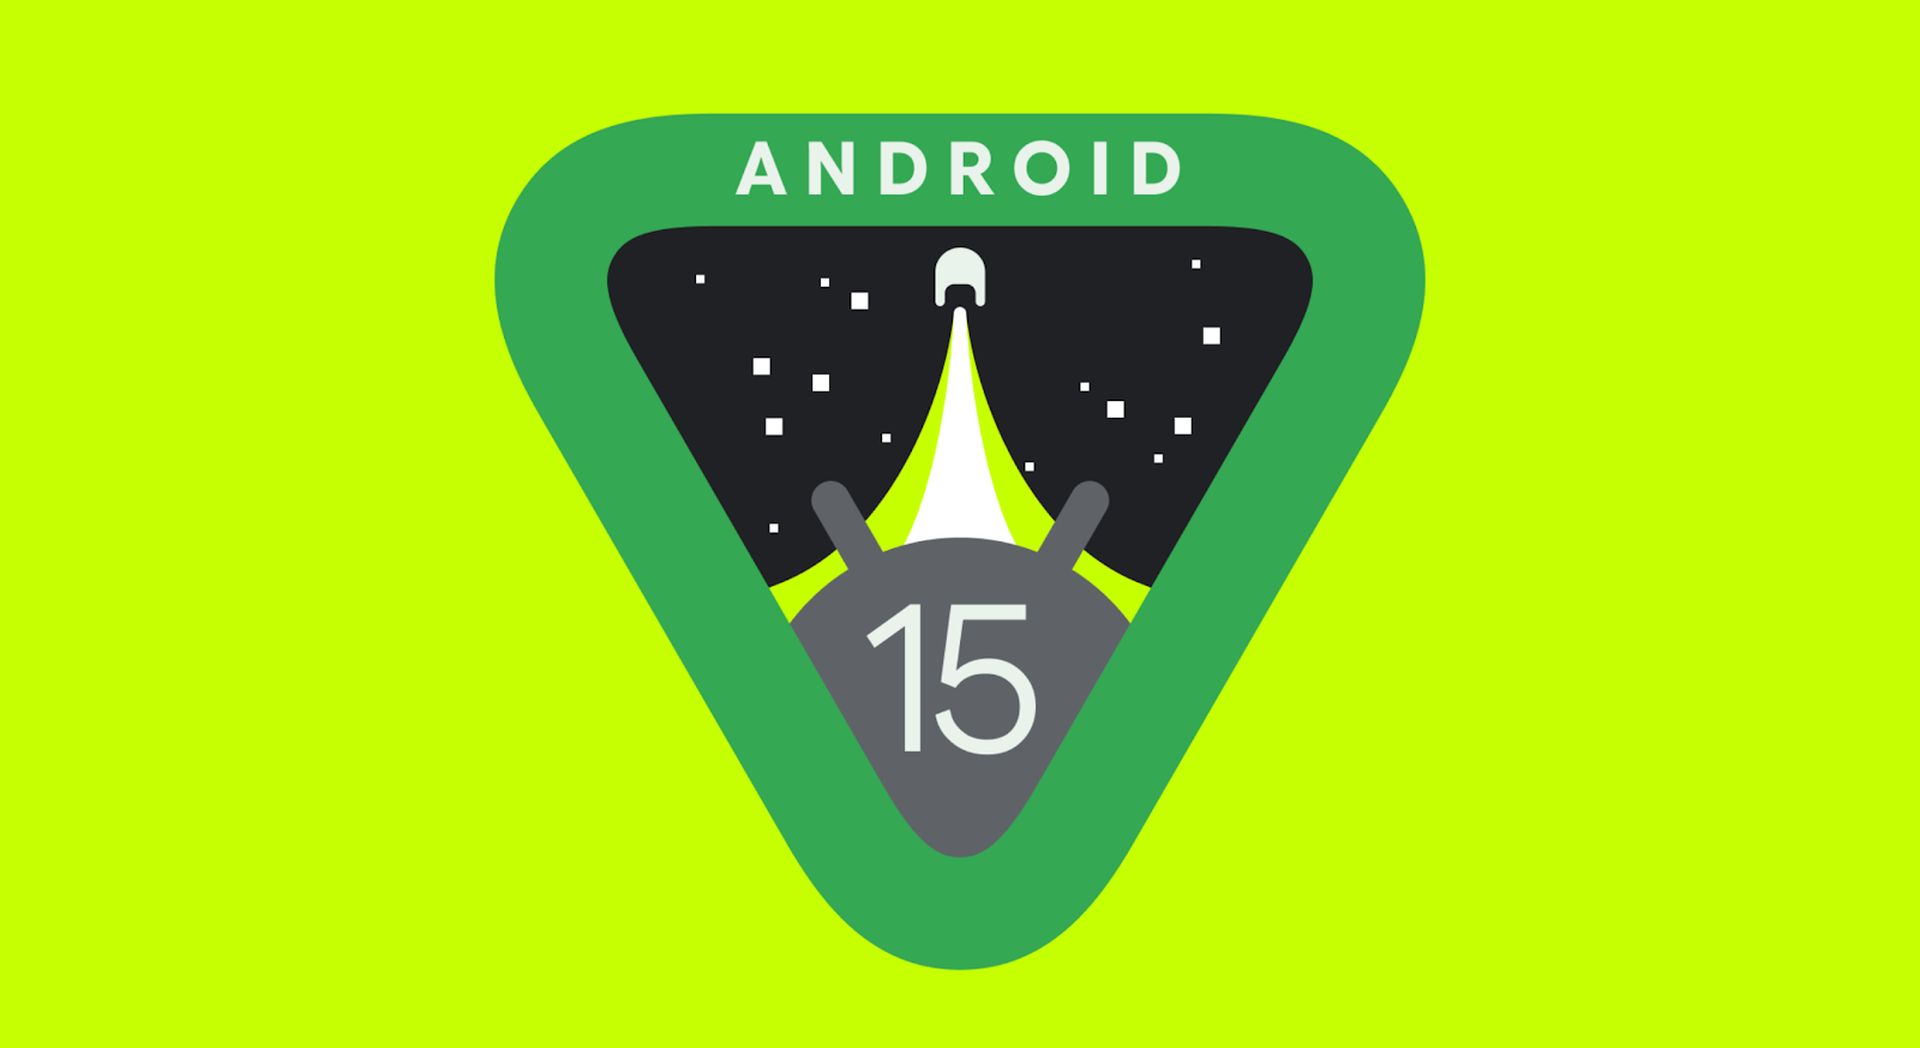 Android 15 introduceert een innovatieve beveiligingsfunctie genaamd "adaptieve time-out"